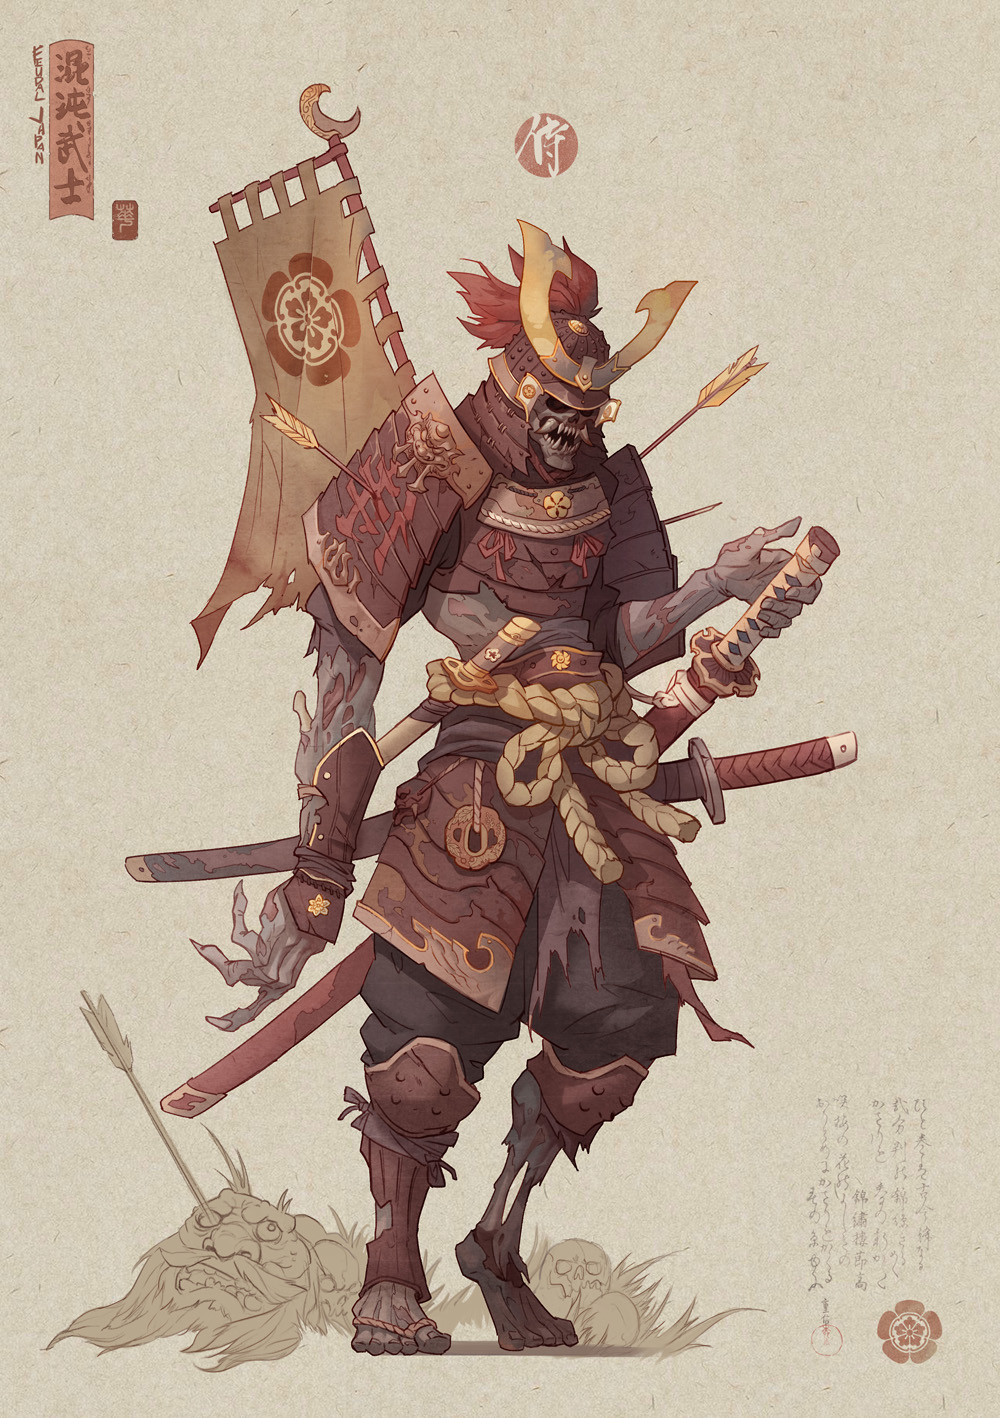 General 1000x1418 Hua Lu drawing digital art samurai men creature armor tie fantasy art